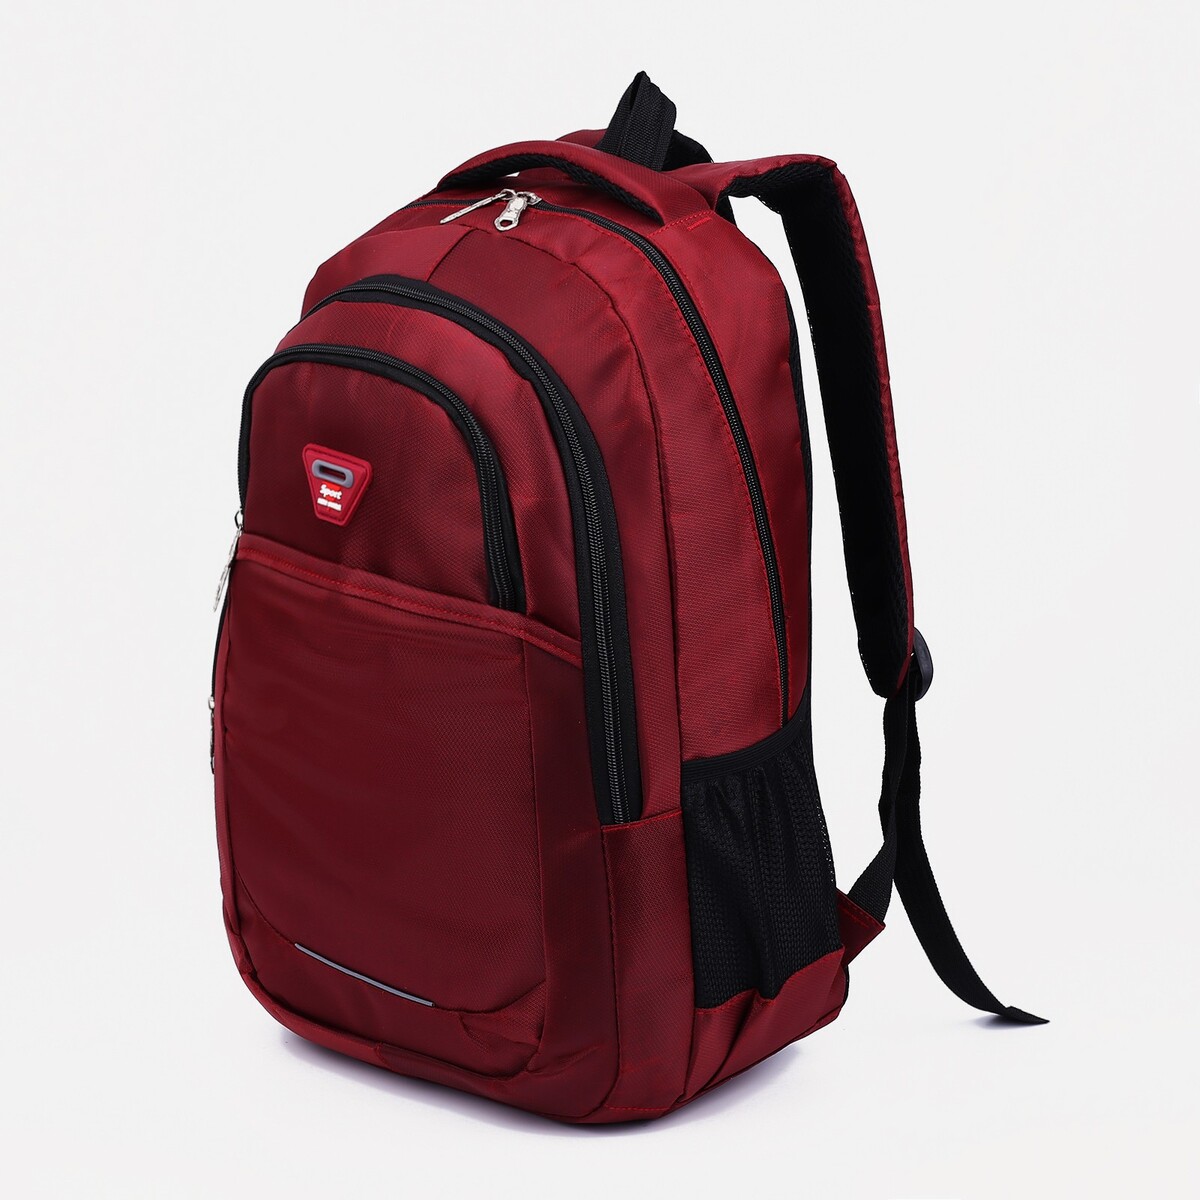 Рюкзак молодежный из текстиля, 2 отдела, 2 кармана, цвет бордовый pixel bag рюкзак с led дисплеем pixel max red line бордовый